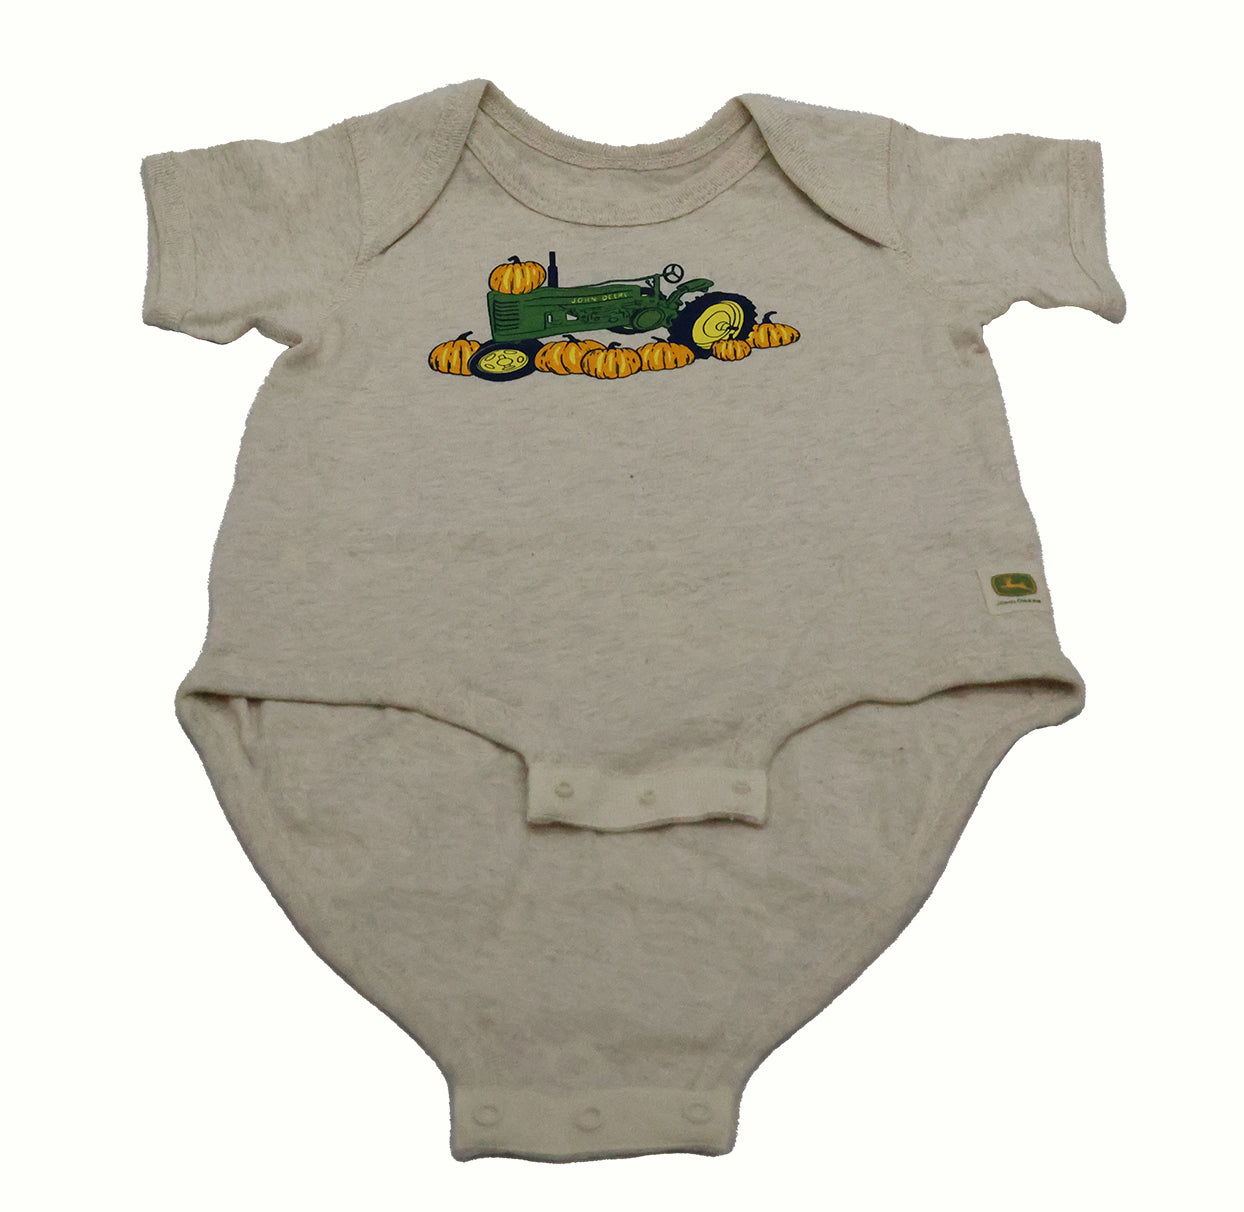 John Deere (12 Months) Pumpkin Tractor Bodysuit - LP84943